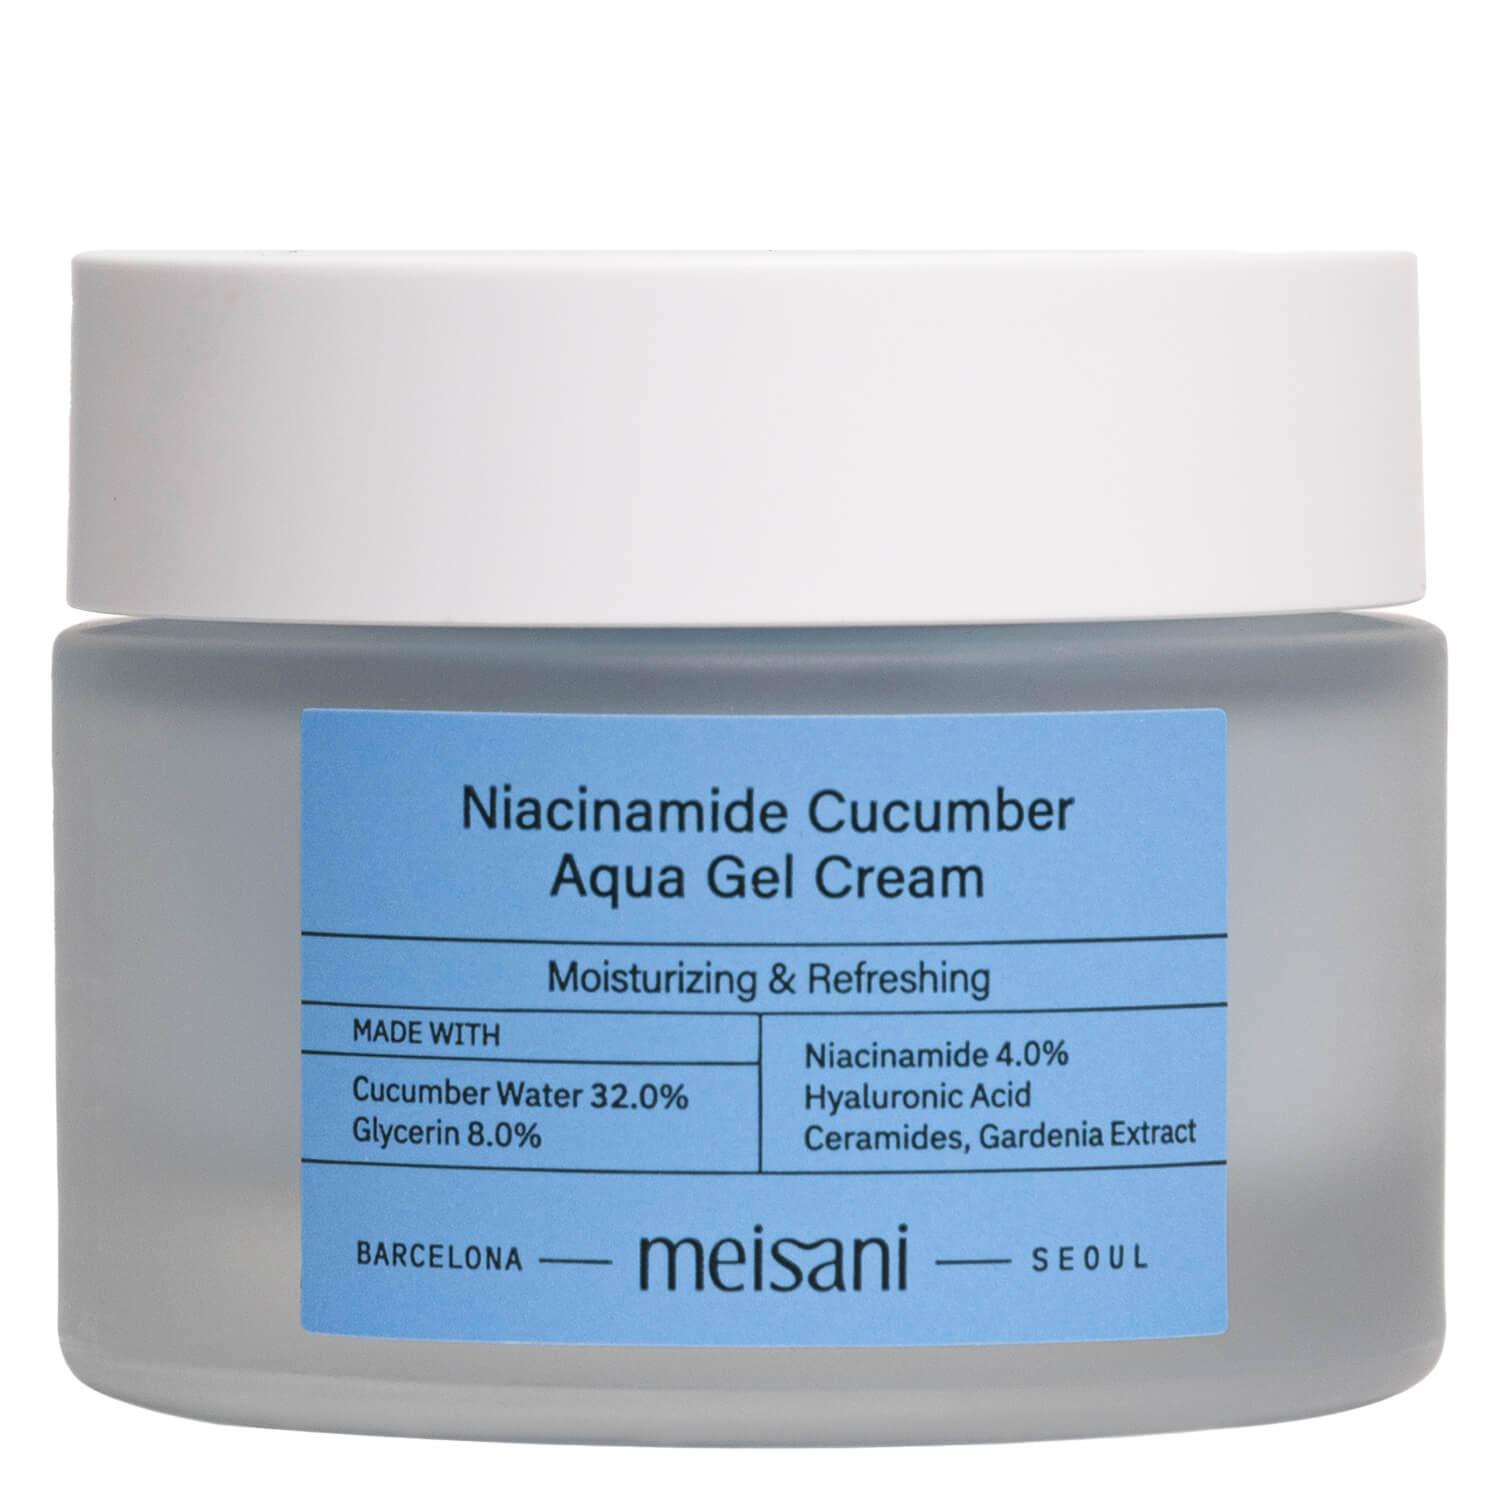 meisani Niacinamide Cucumber Aqua Gel Cream